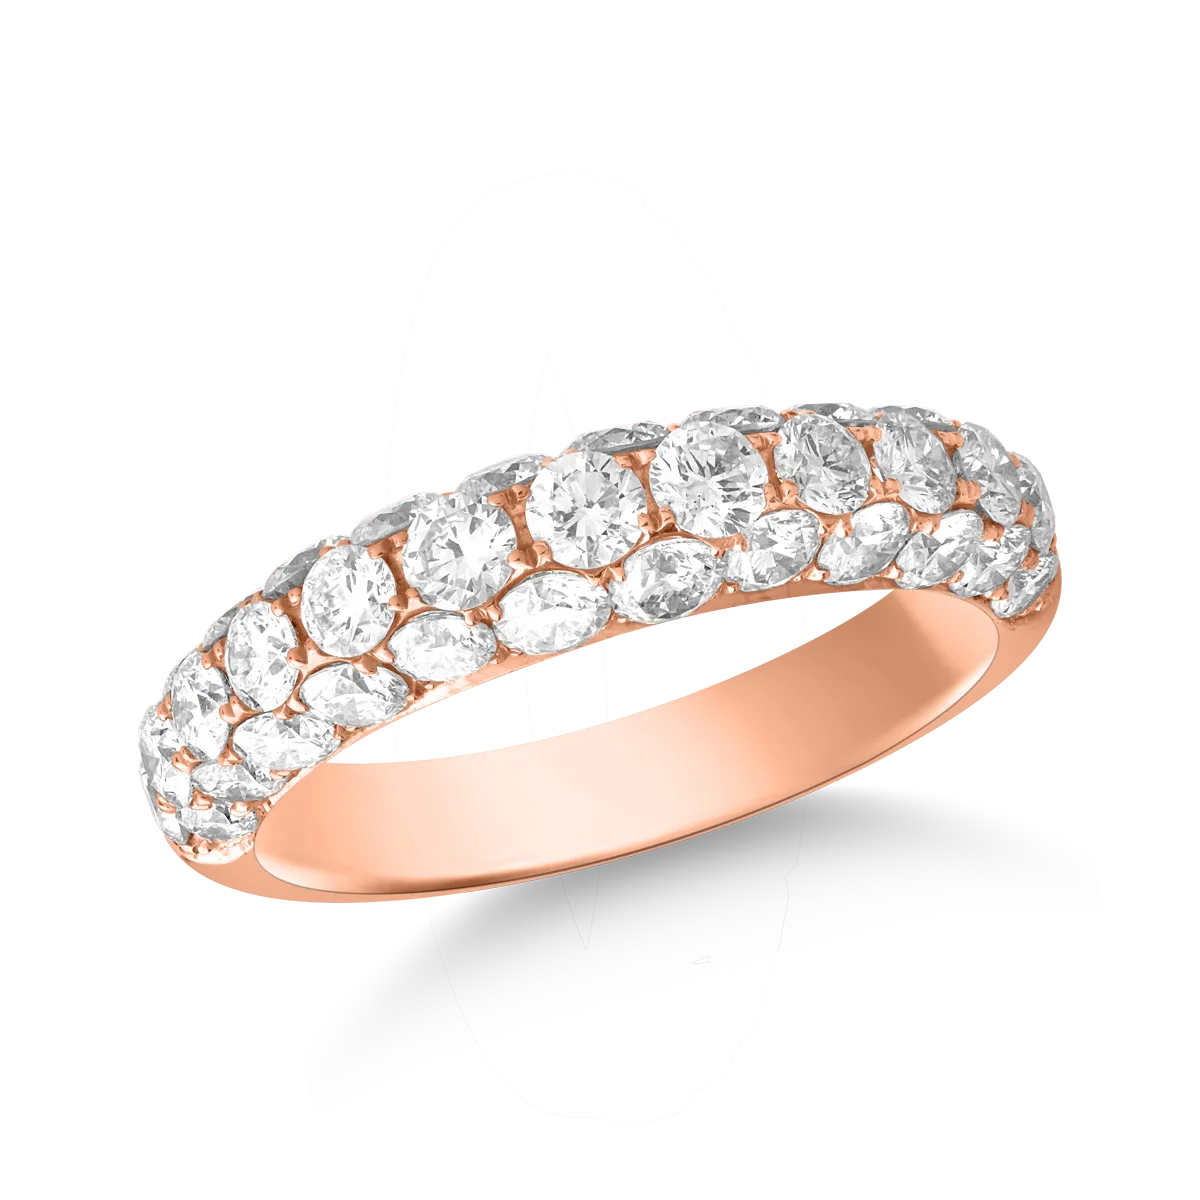 18k rózsa arany gyűrű, 2.03ct gyémántokkal